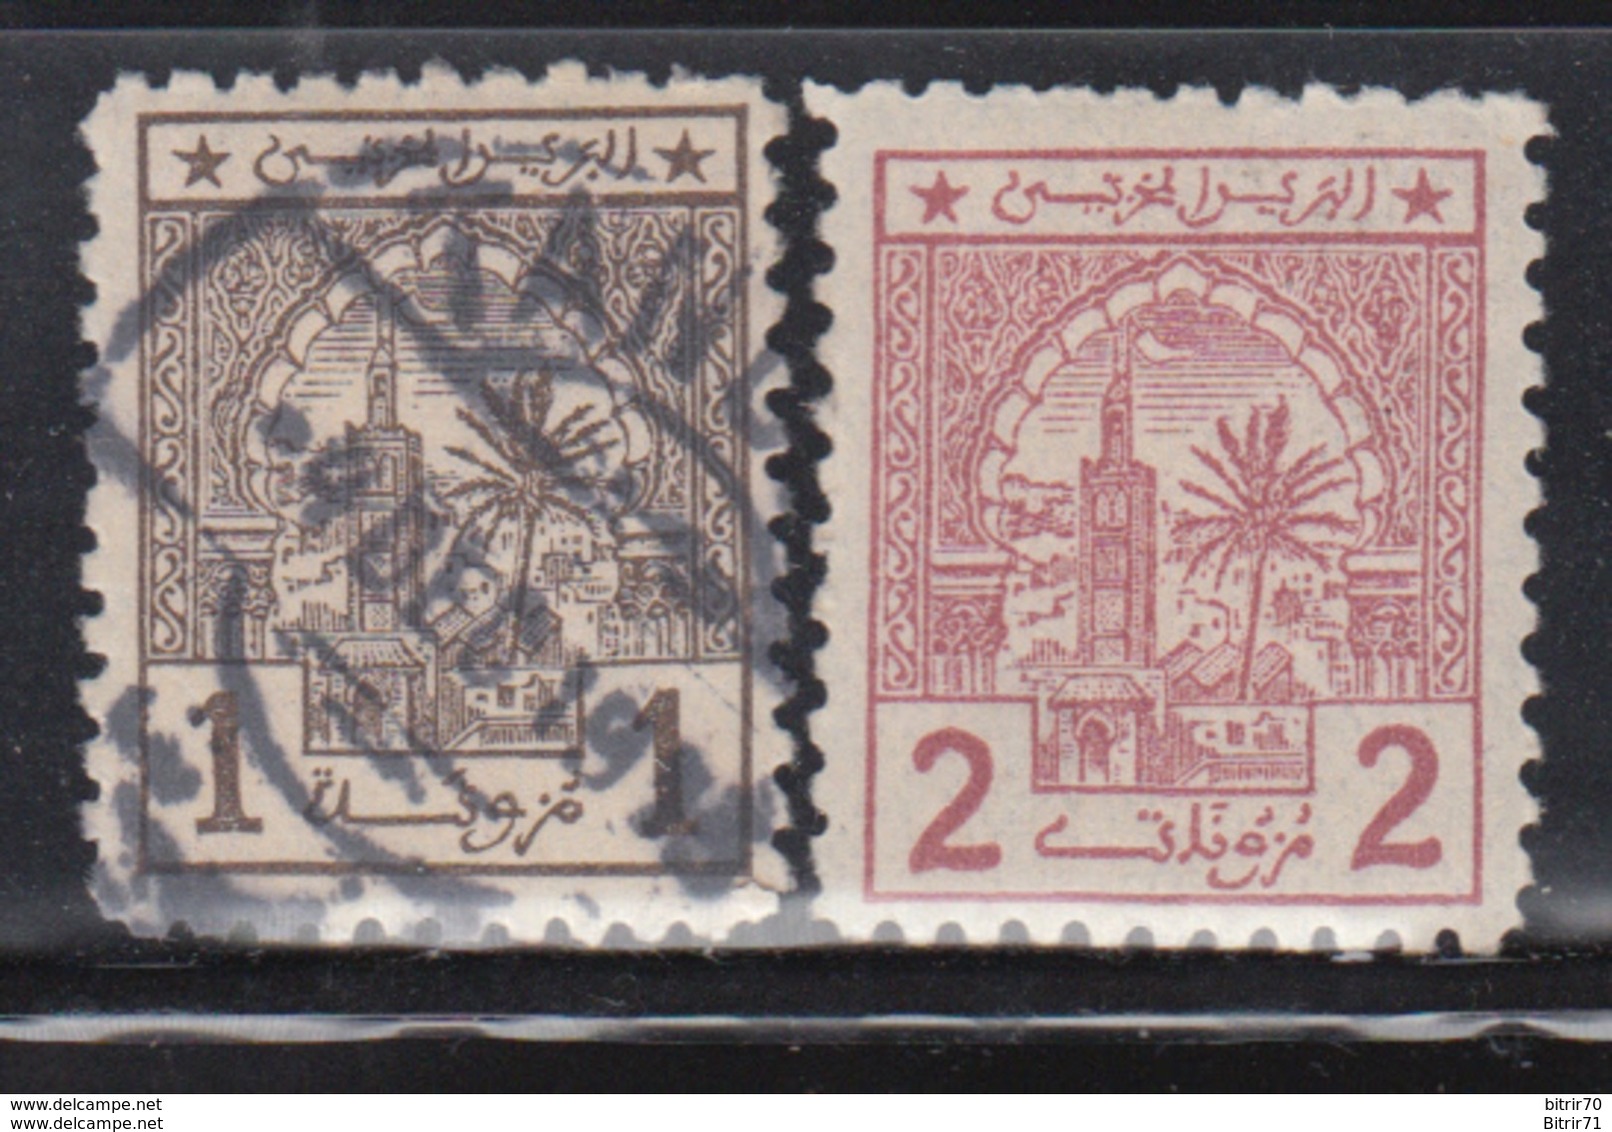 Postes Cherifiennes , 1912  Yvert Nº 1, 2 - Marruecos (1956-...)